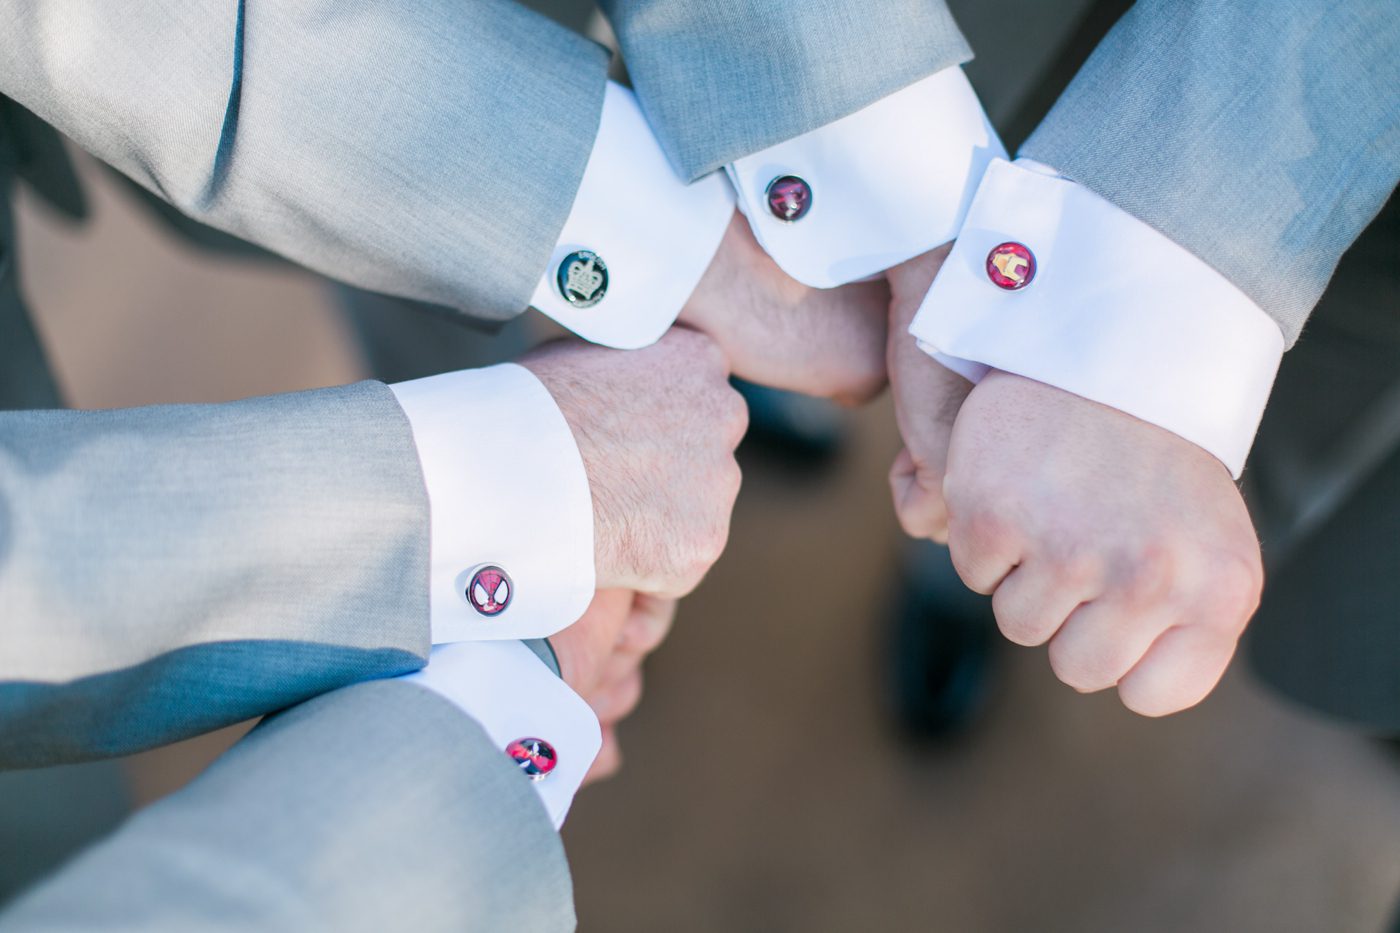 Marvel super hero cufflinks for groomsmen 